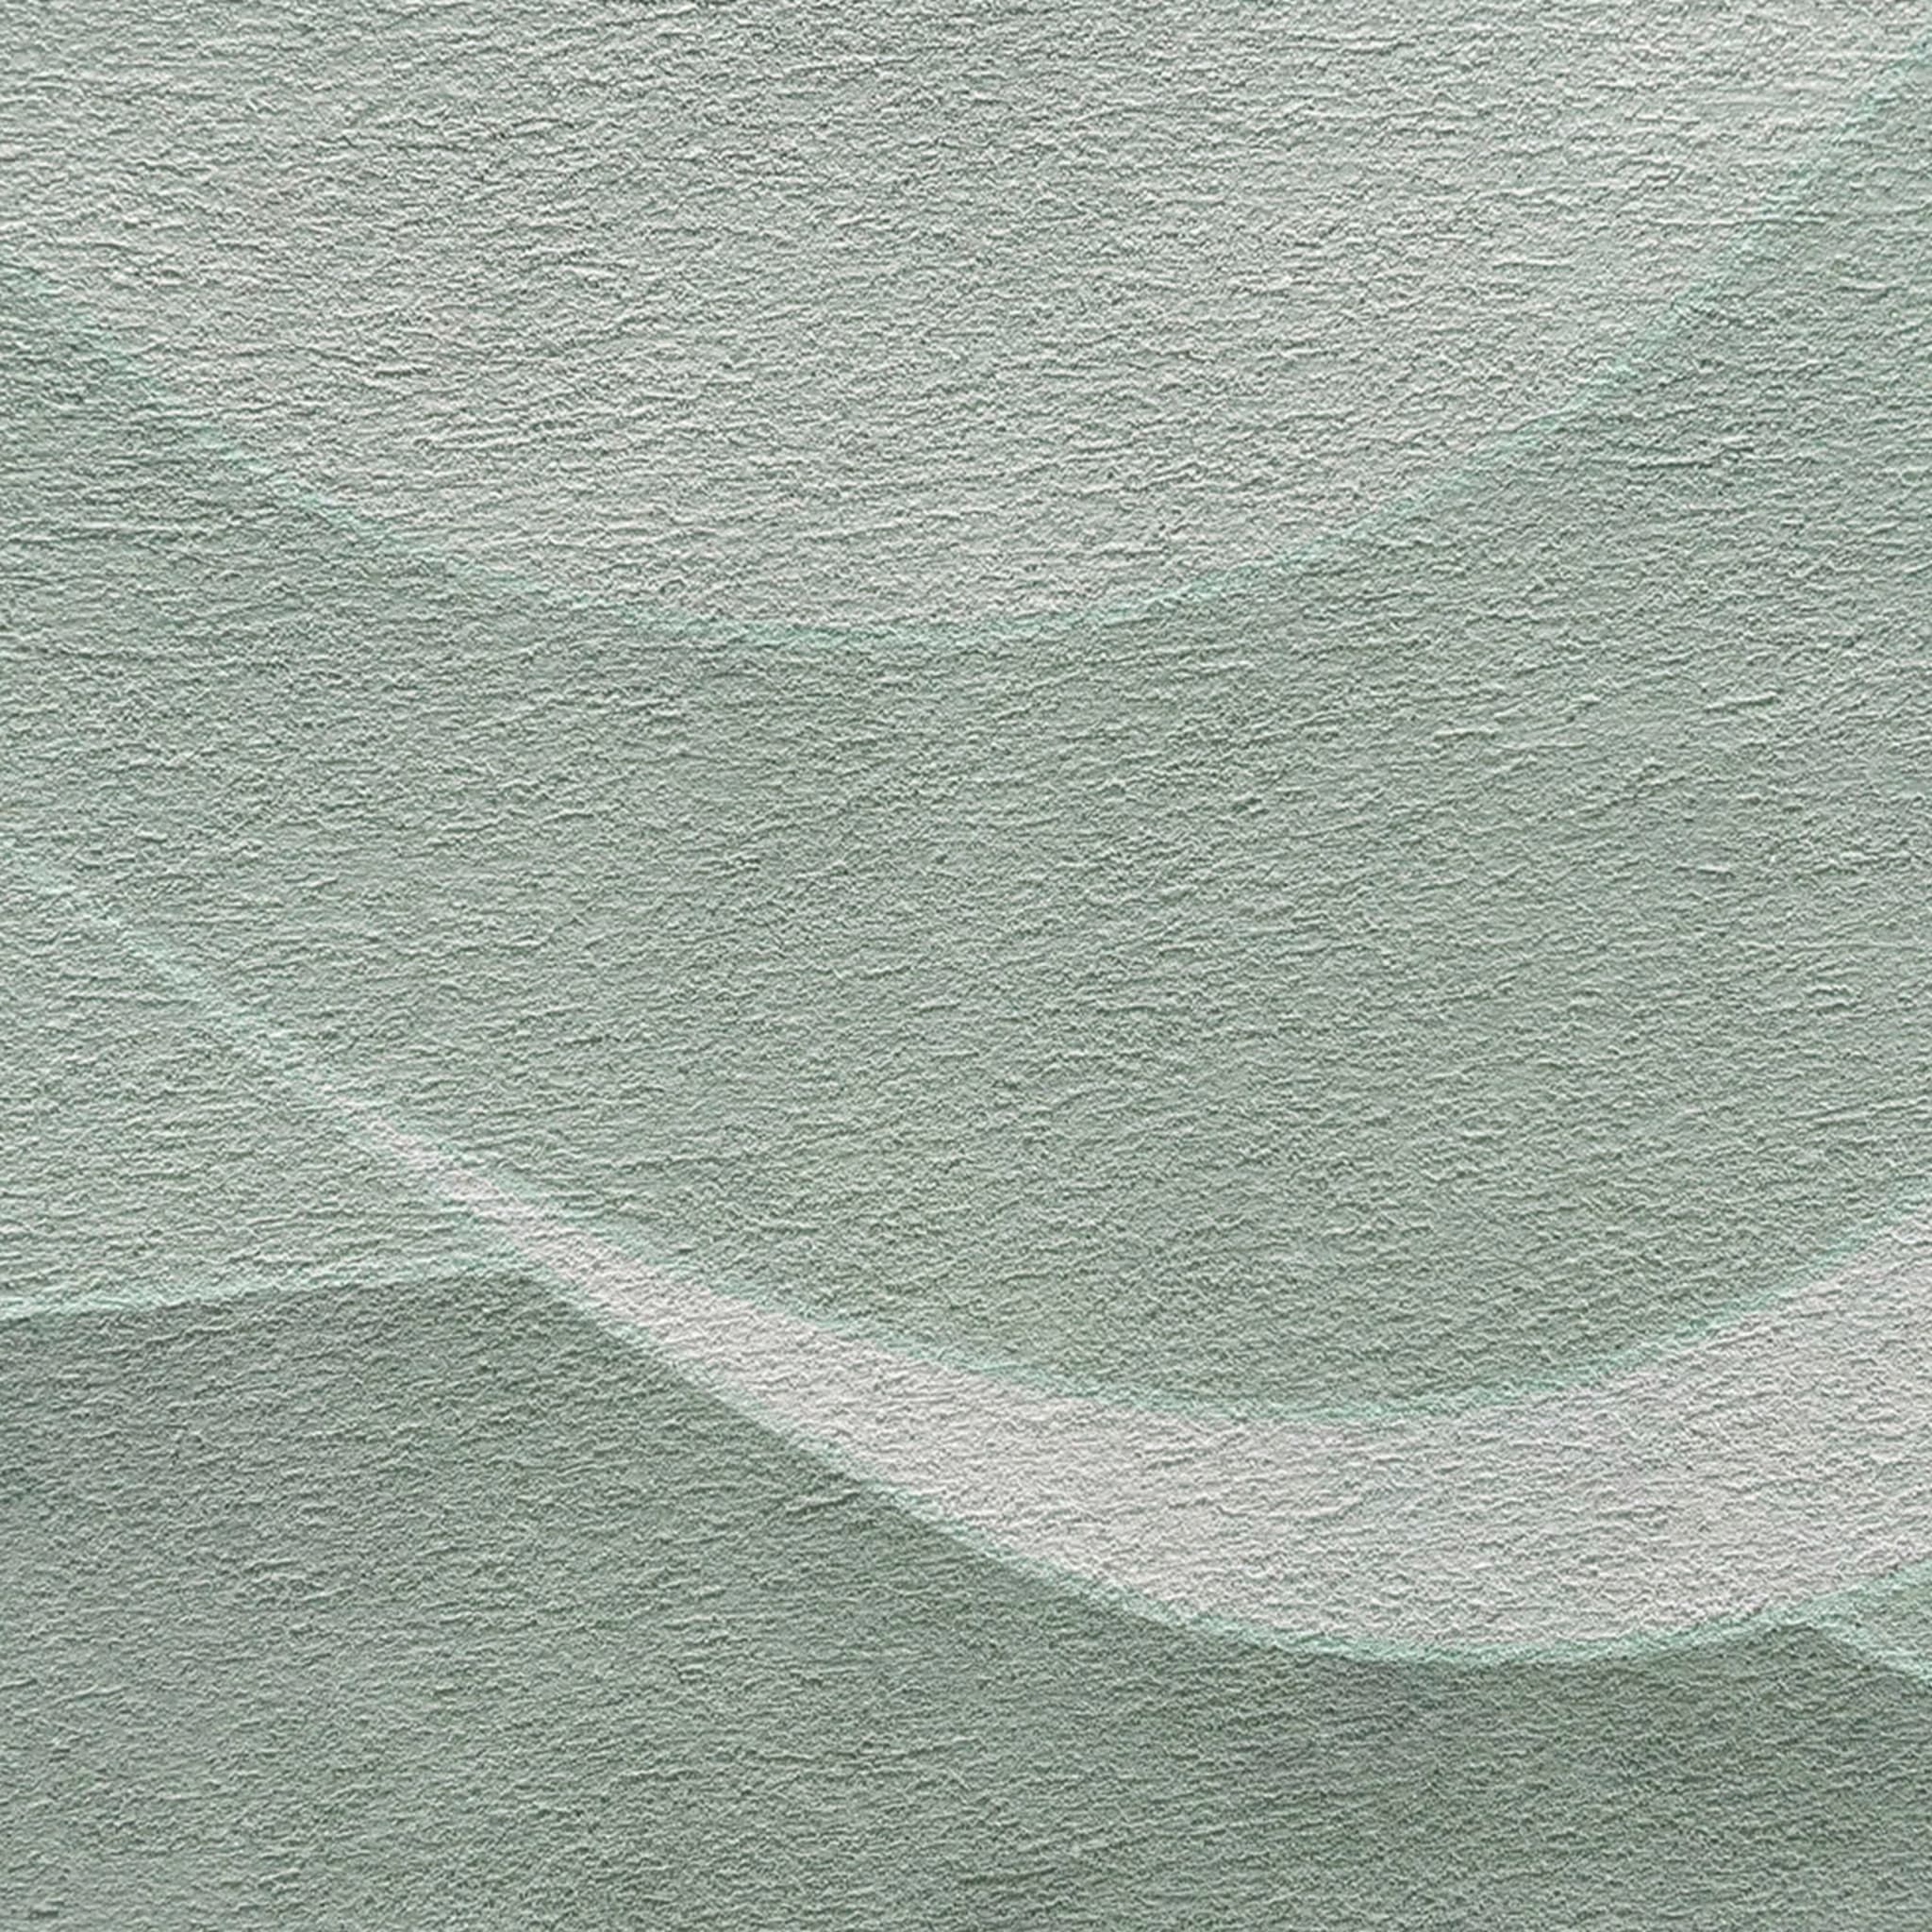 Green Deep Wave textured wallpaper - Alternative view 1